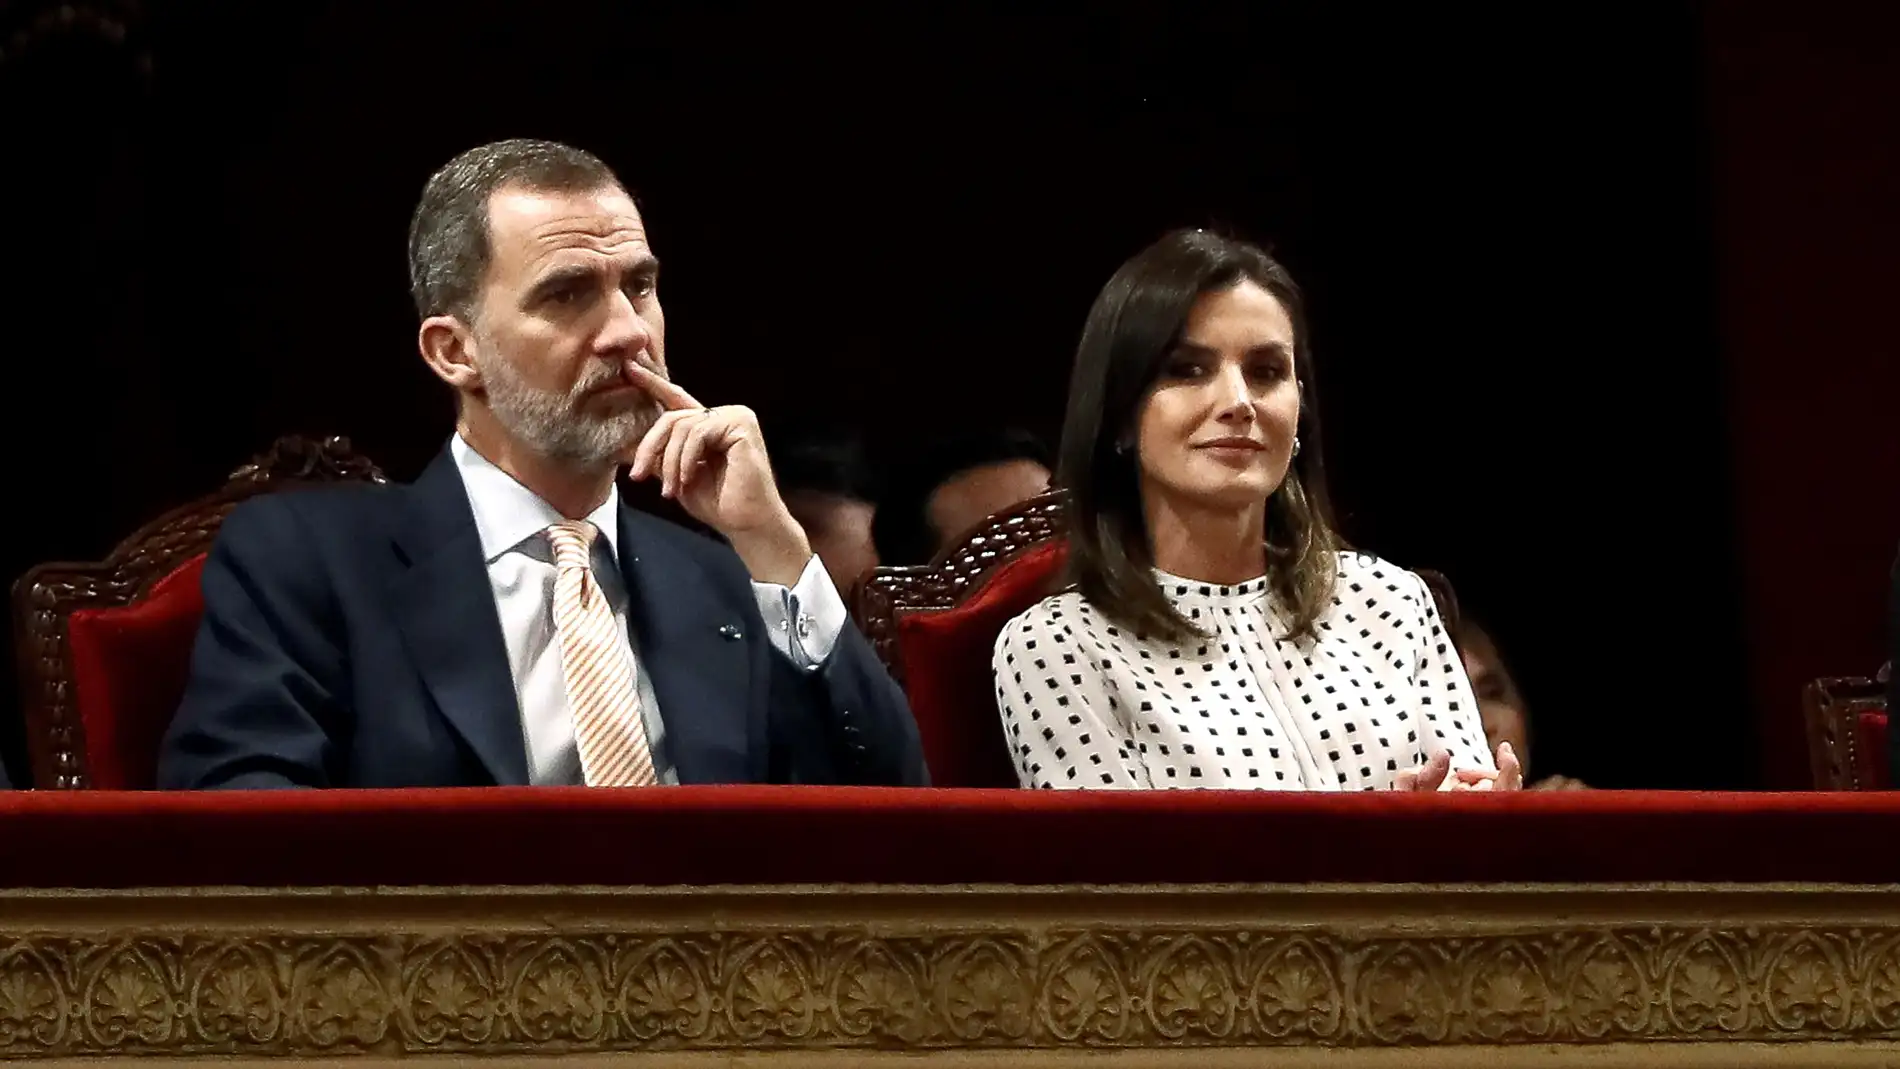  Los reyes Felipe VI y Letizia, durante la sesión inaugural del VIII Congreso Internacional de la Lengua Española 